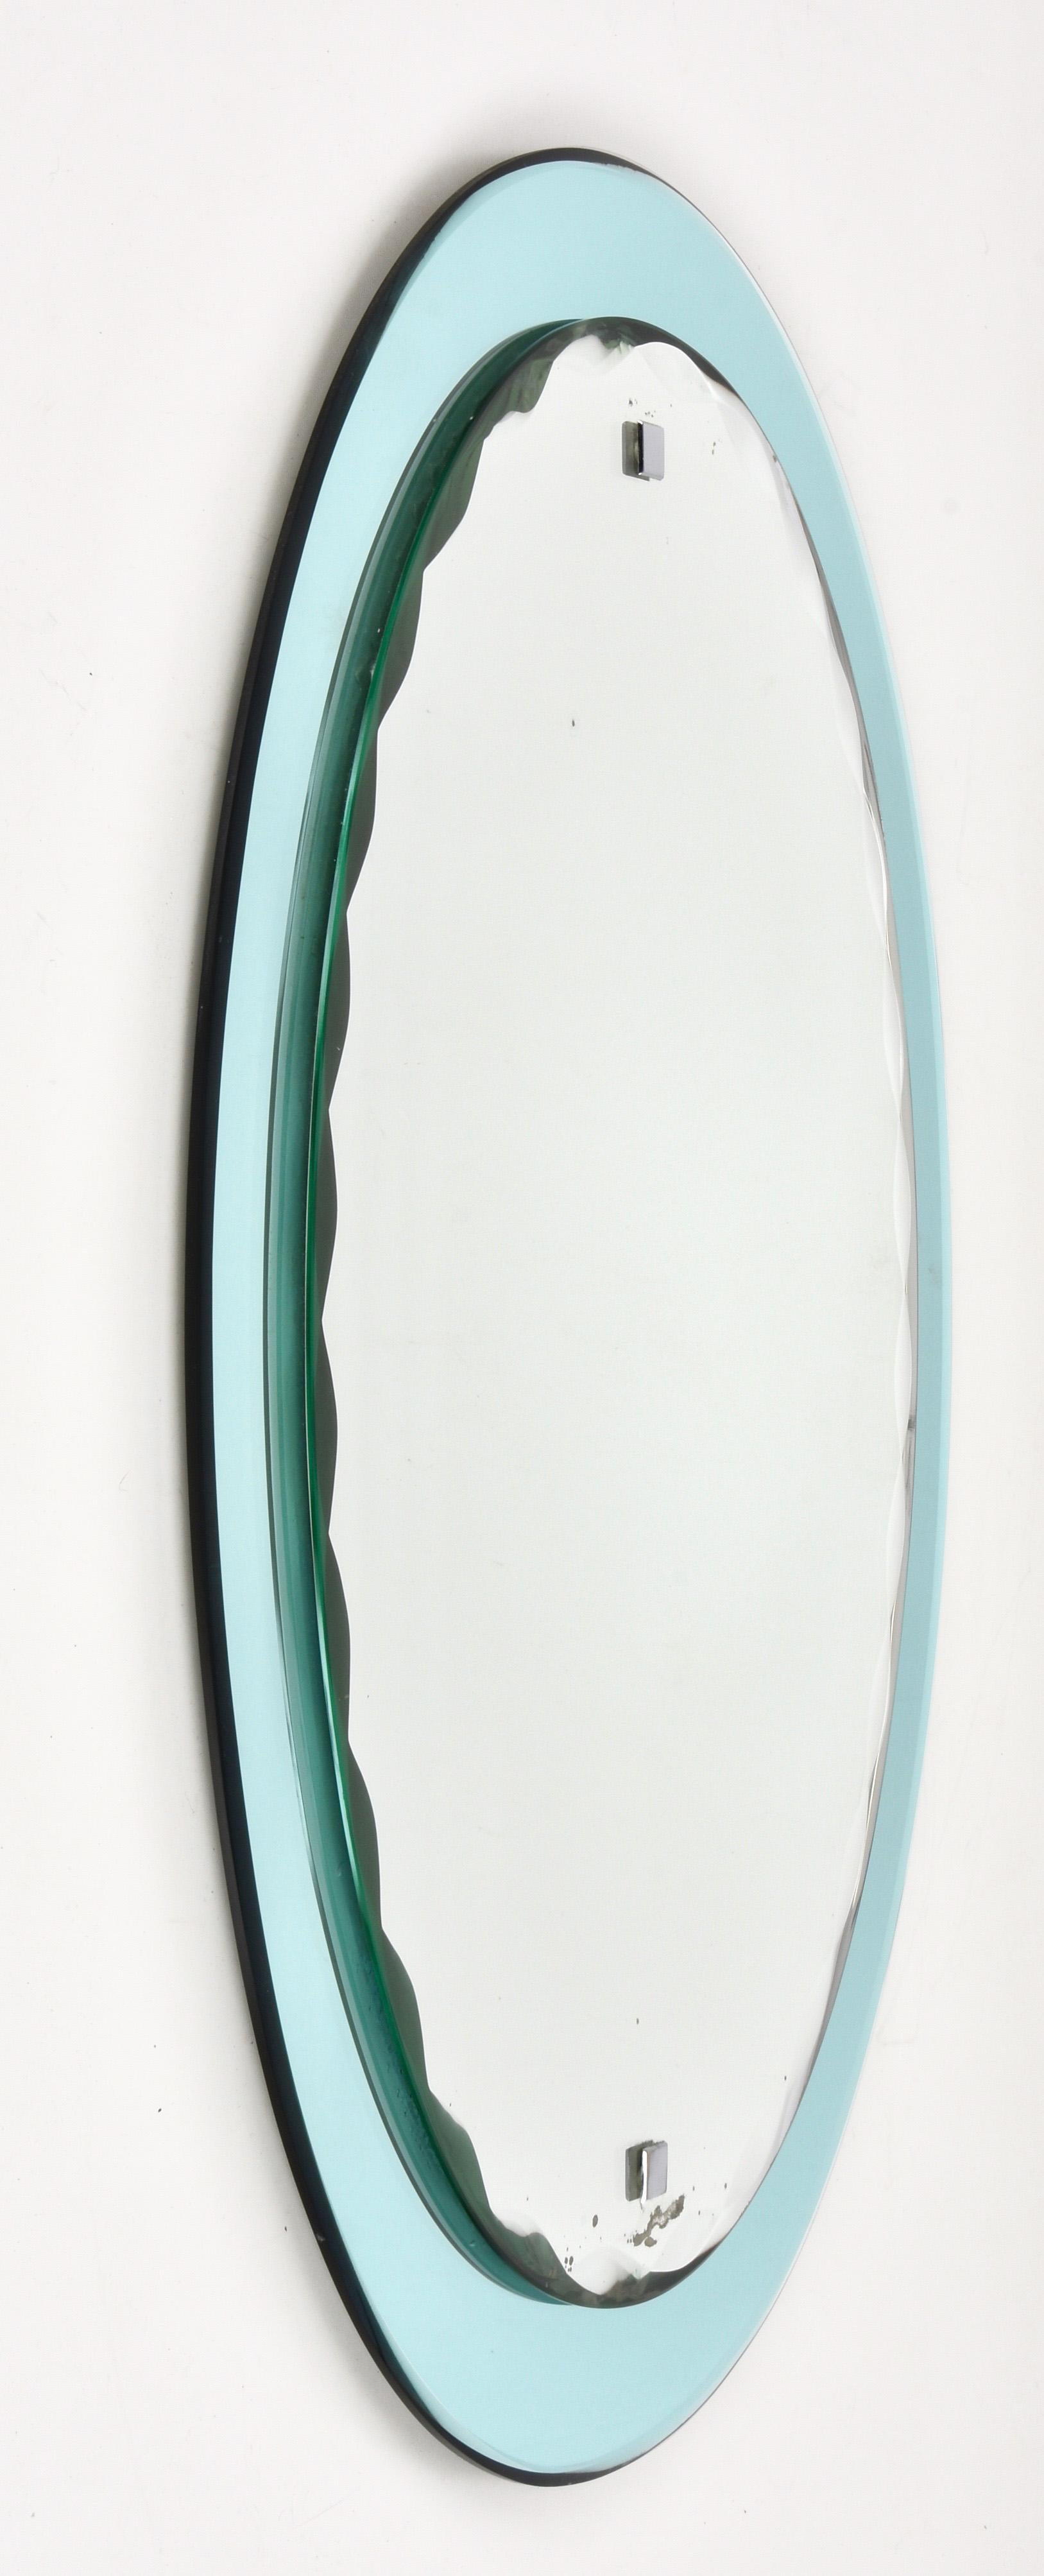 Schöner Spiegel aus der Mitte des Jahrhunderts mit helltürkisem Rahmen und ovalem Schnitzspiegel. Dieser italienische Spiegel ist im Stil von Cristal Arte und wurde in den 1960er Jahren in Italien hergestellt.

Dieses Stück ist ein Beispiel für die